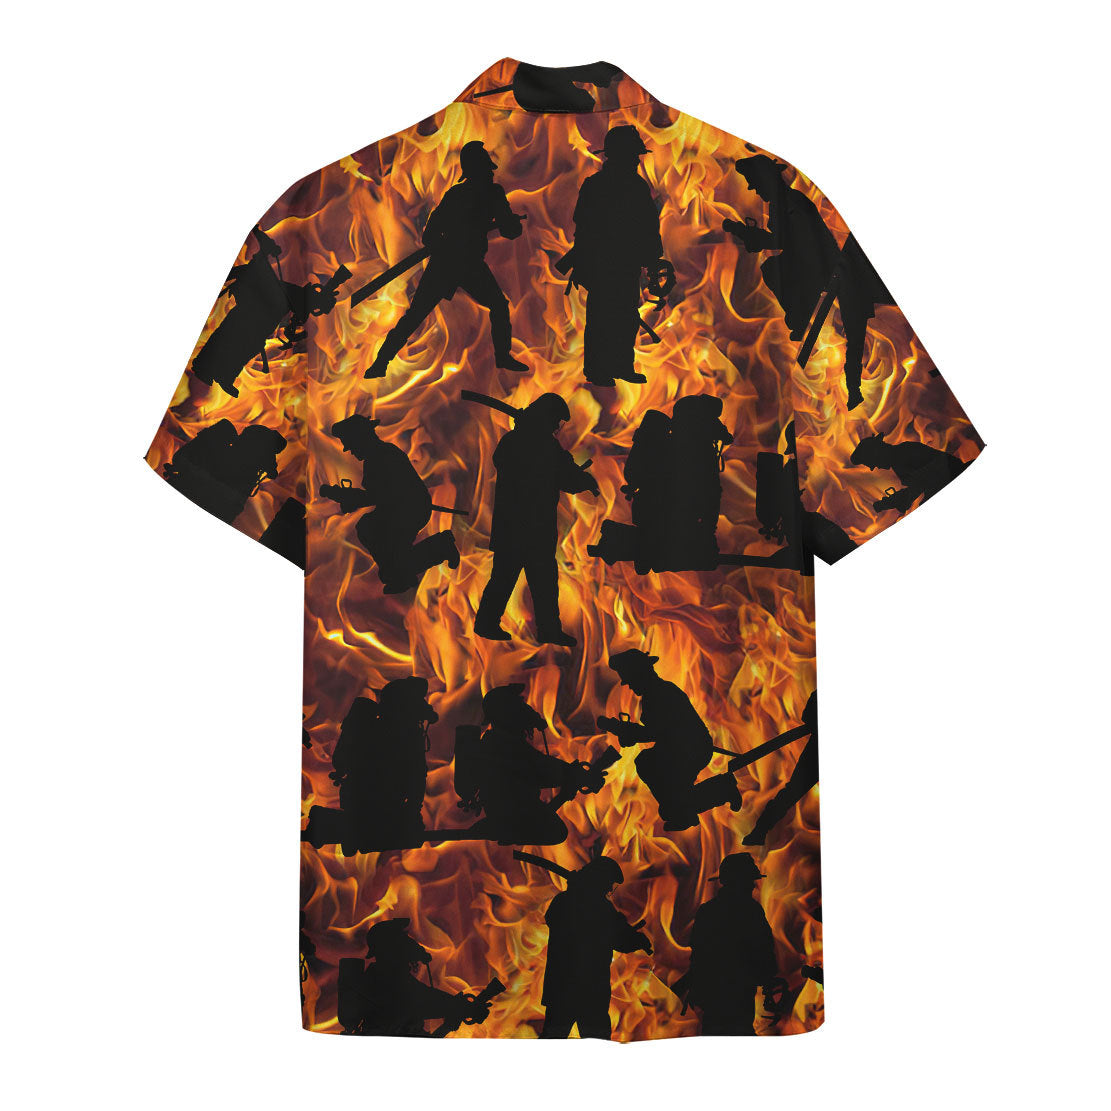 Fire Fighter Hawaii Shirt